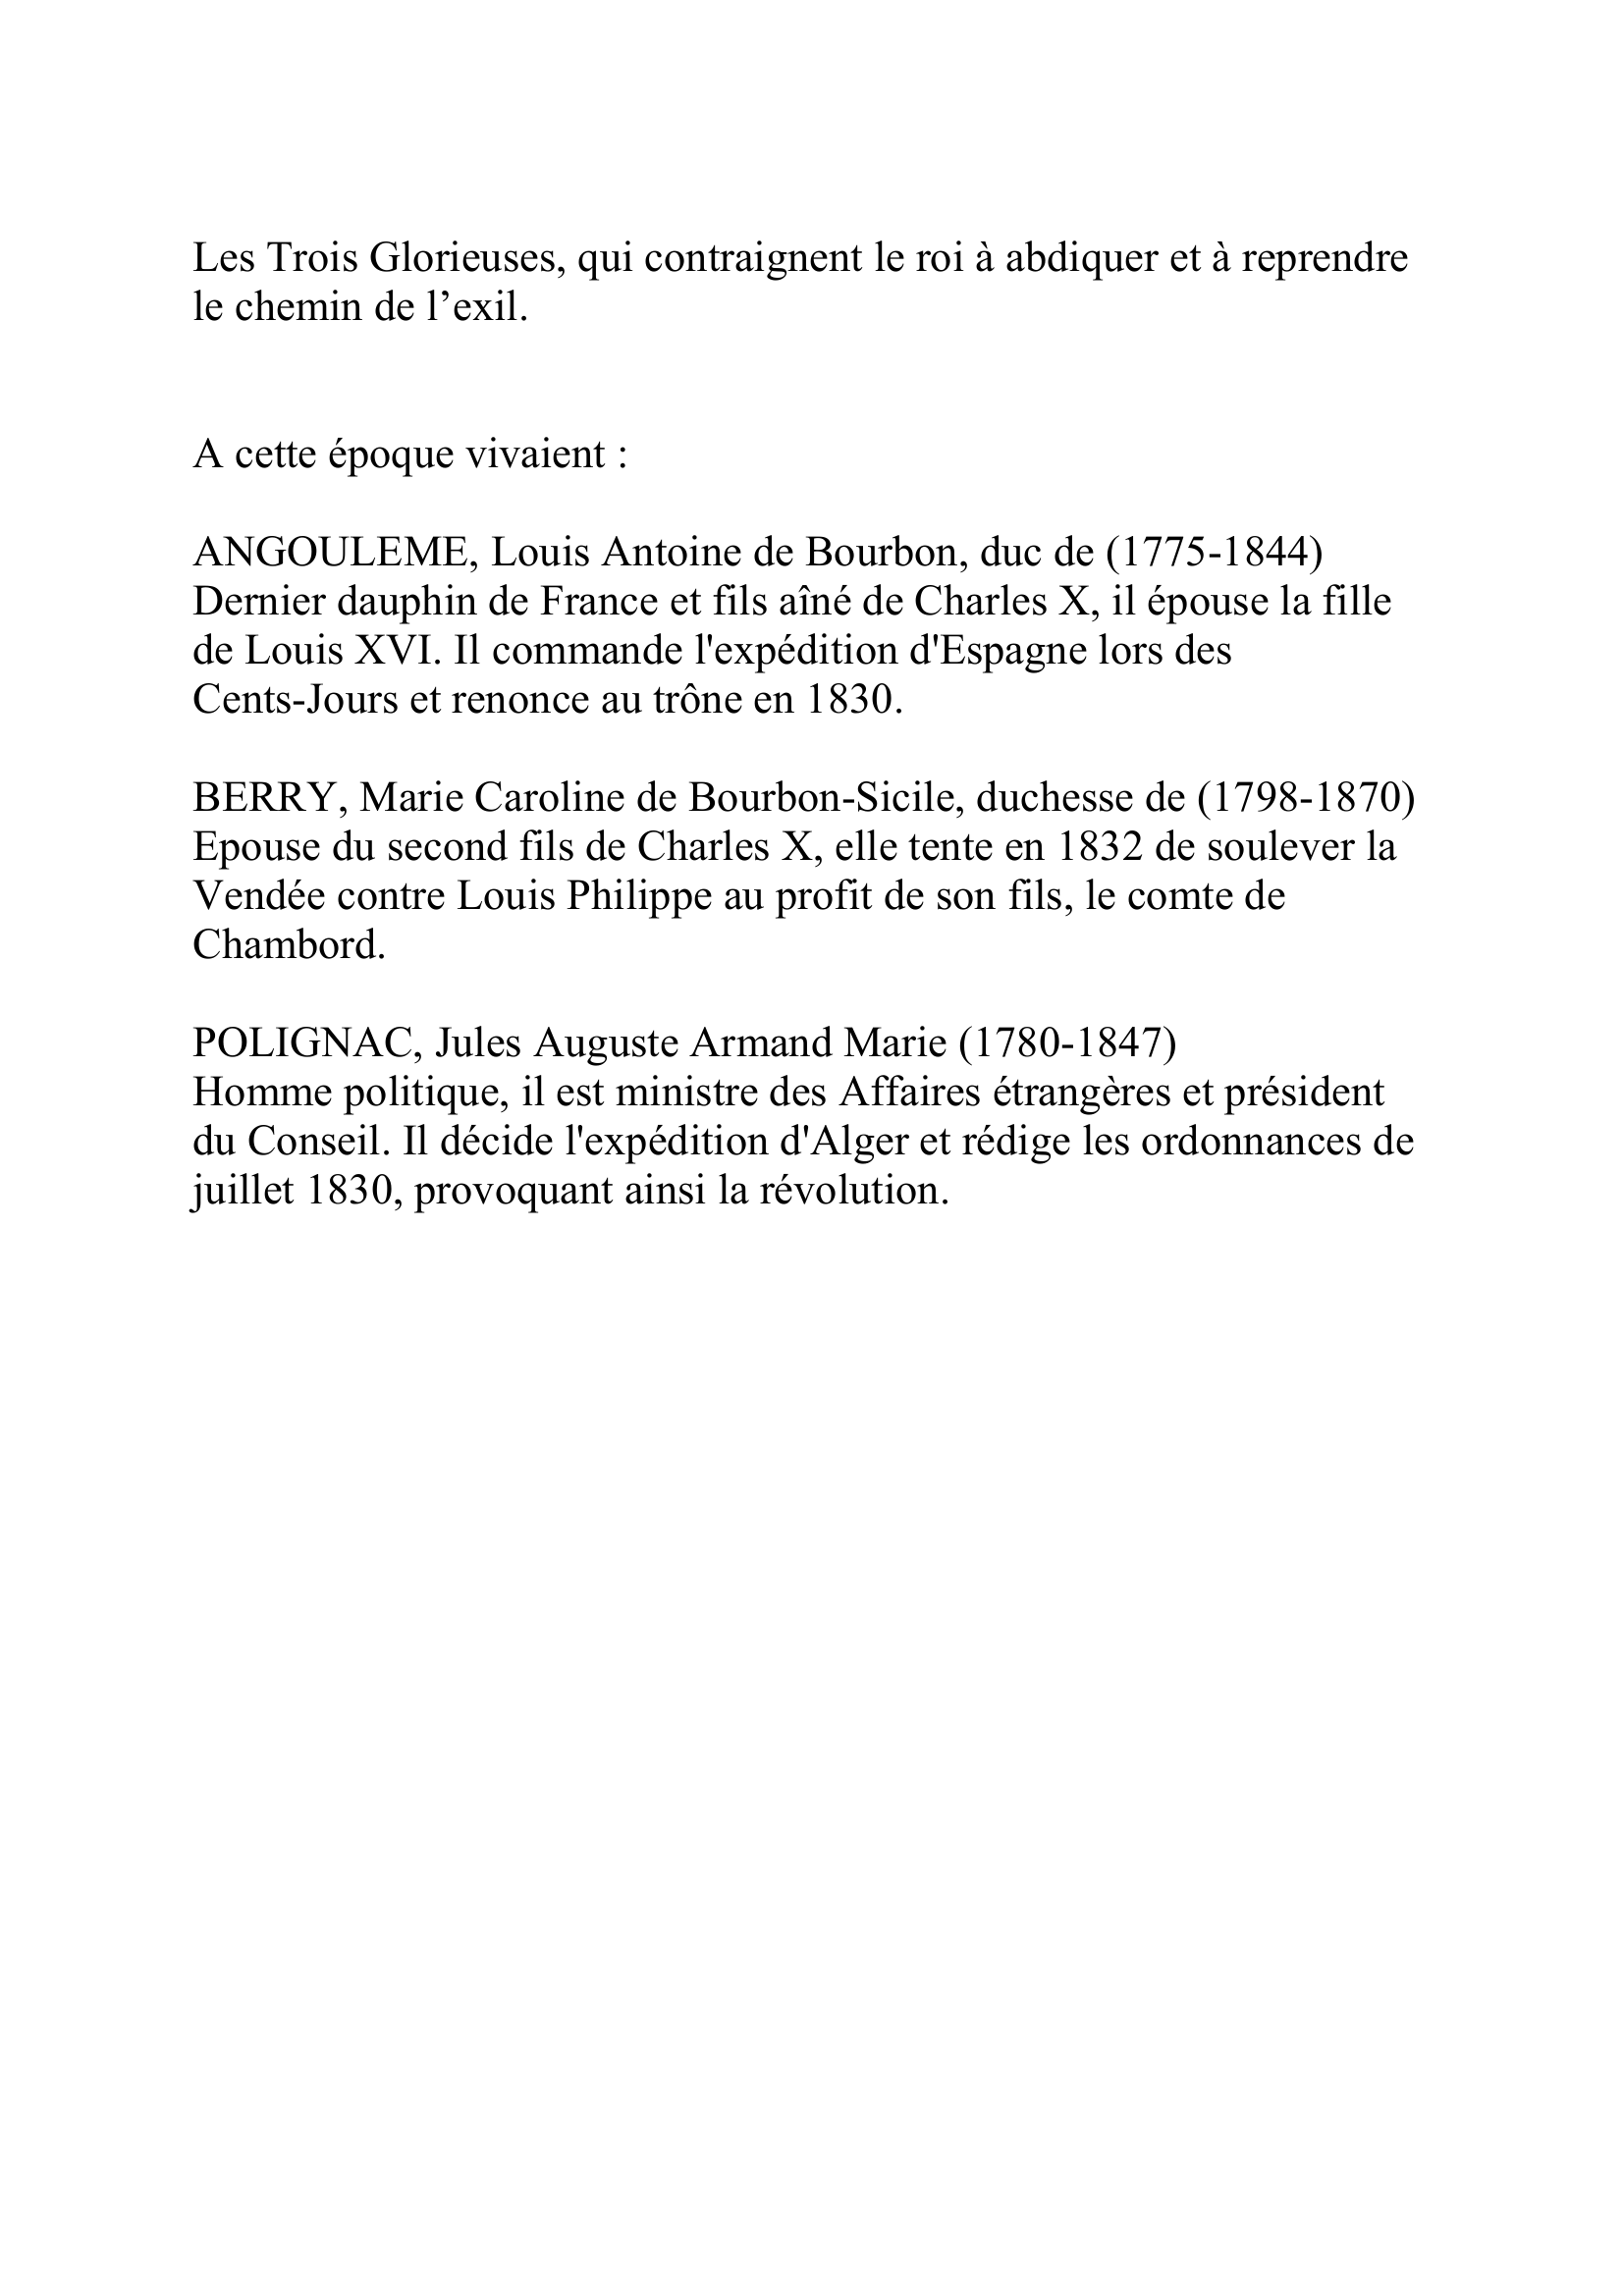 Prévisualisation du document CHARLES X
Charles-Philippe de Bourbon, comte d'Artois
(9 octobre 1757-6 novembre 1836)
Roi de France (1824-1830)
Frère de Louis XVI et de Louis XVIII, il succède à ce dernier en
1824.